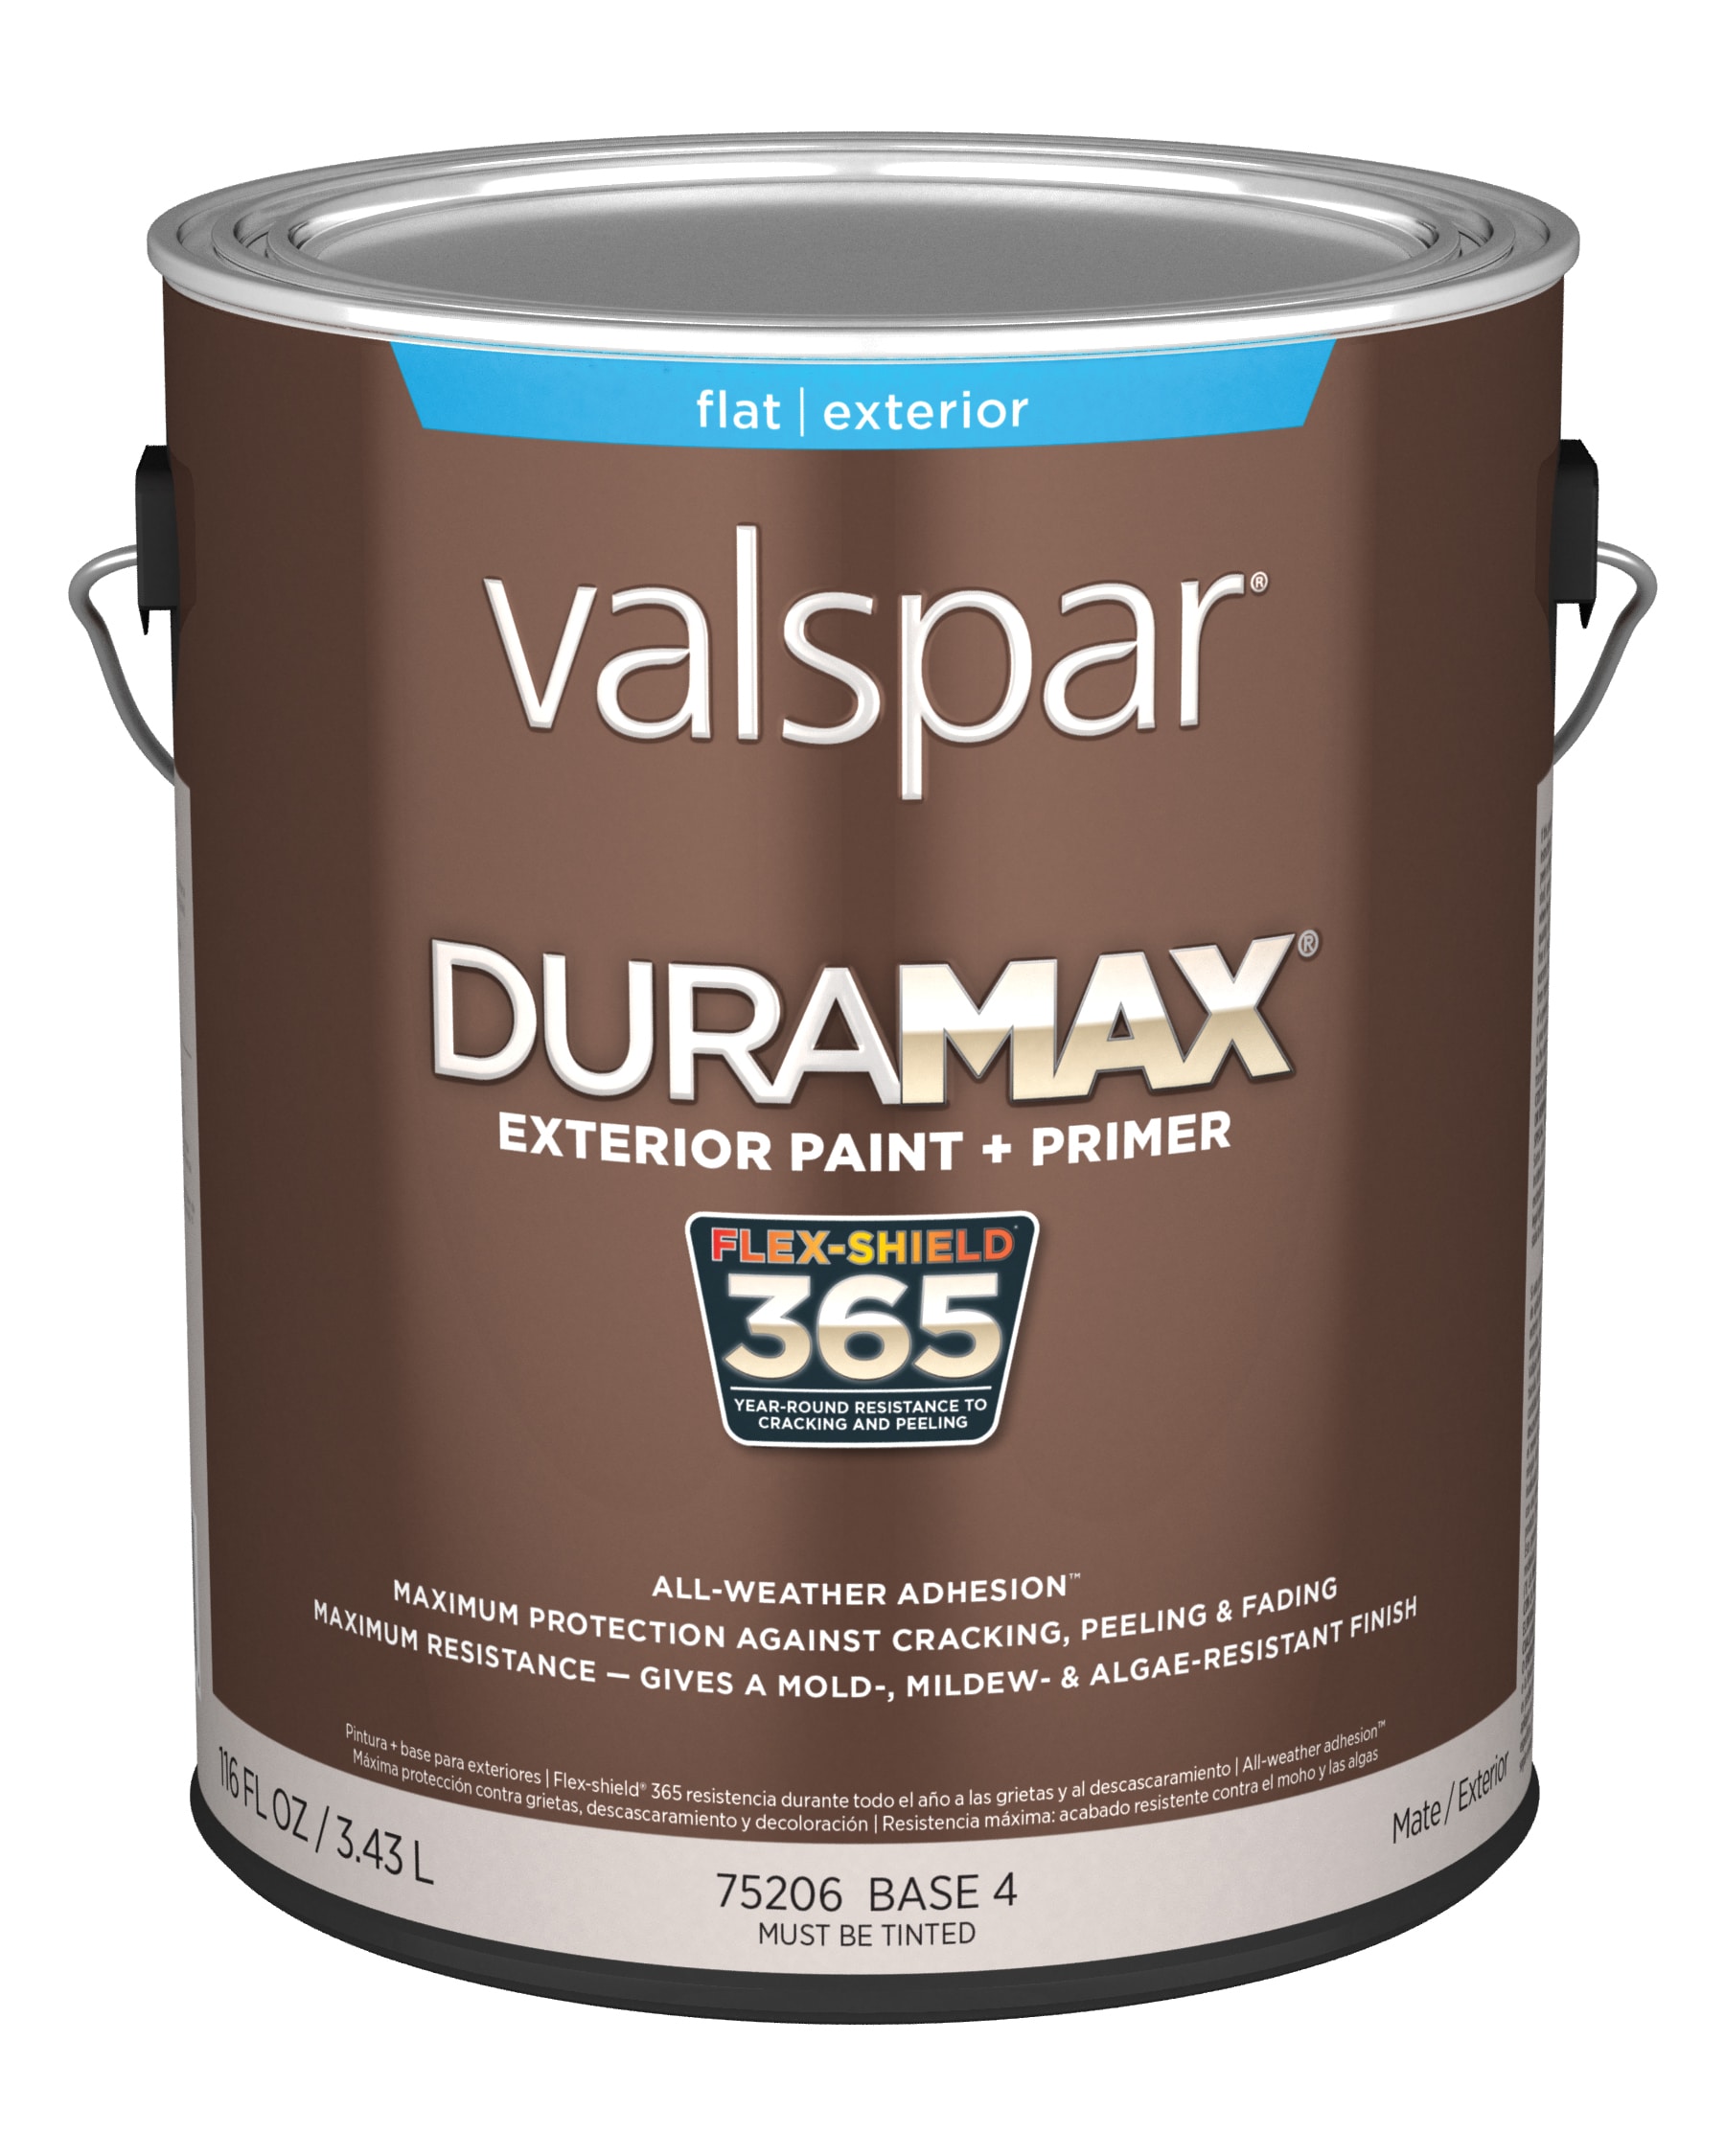 Duramax® Plastic Primer Spray Paint